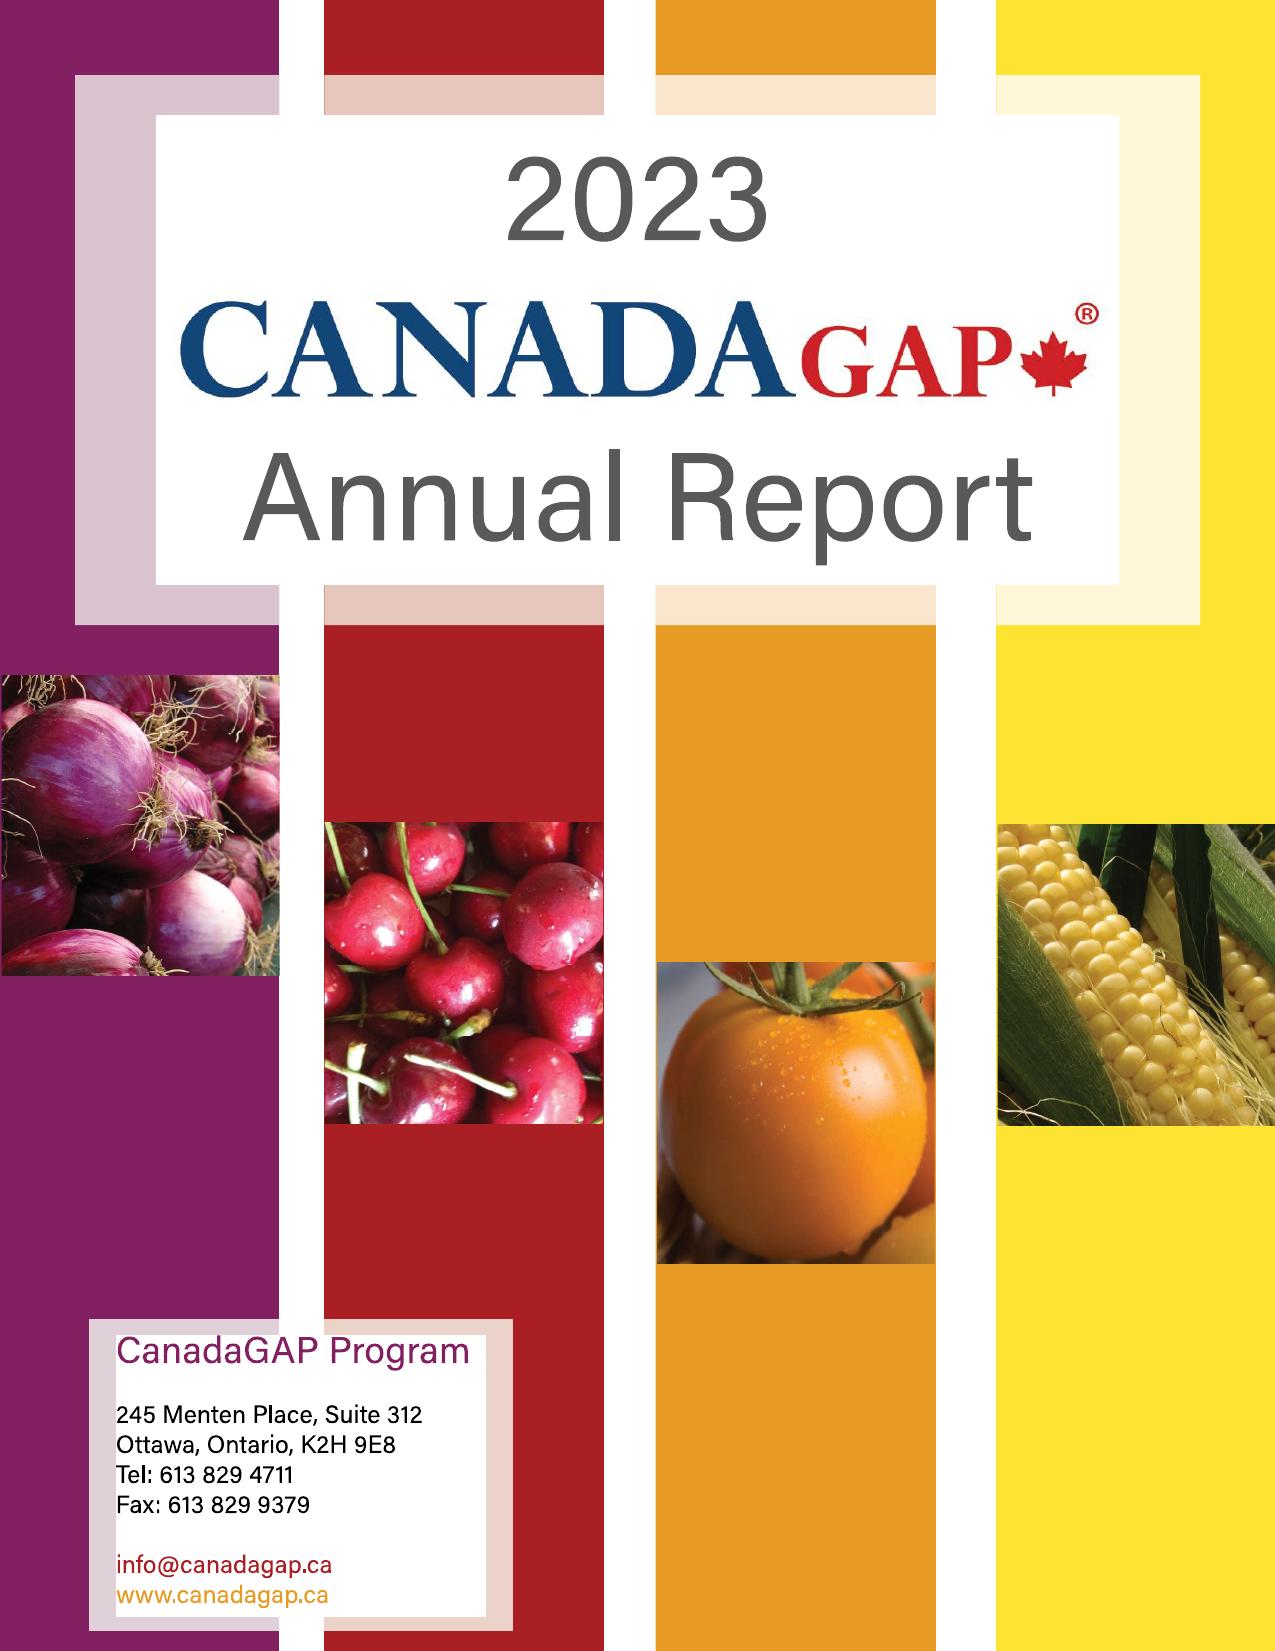 CANADAGAP 2023 Annual Report